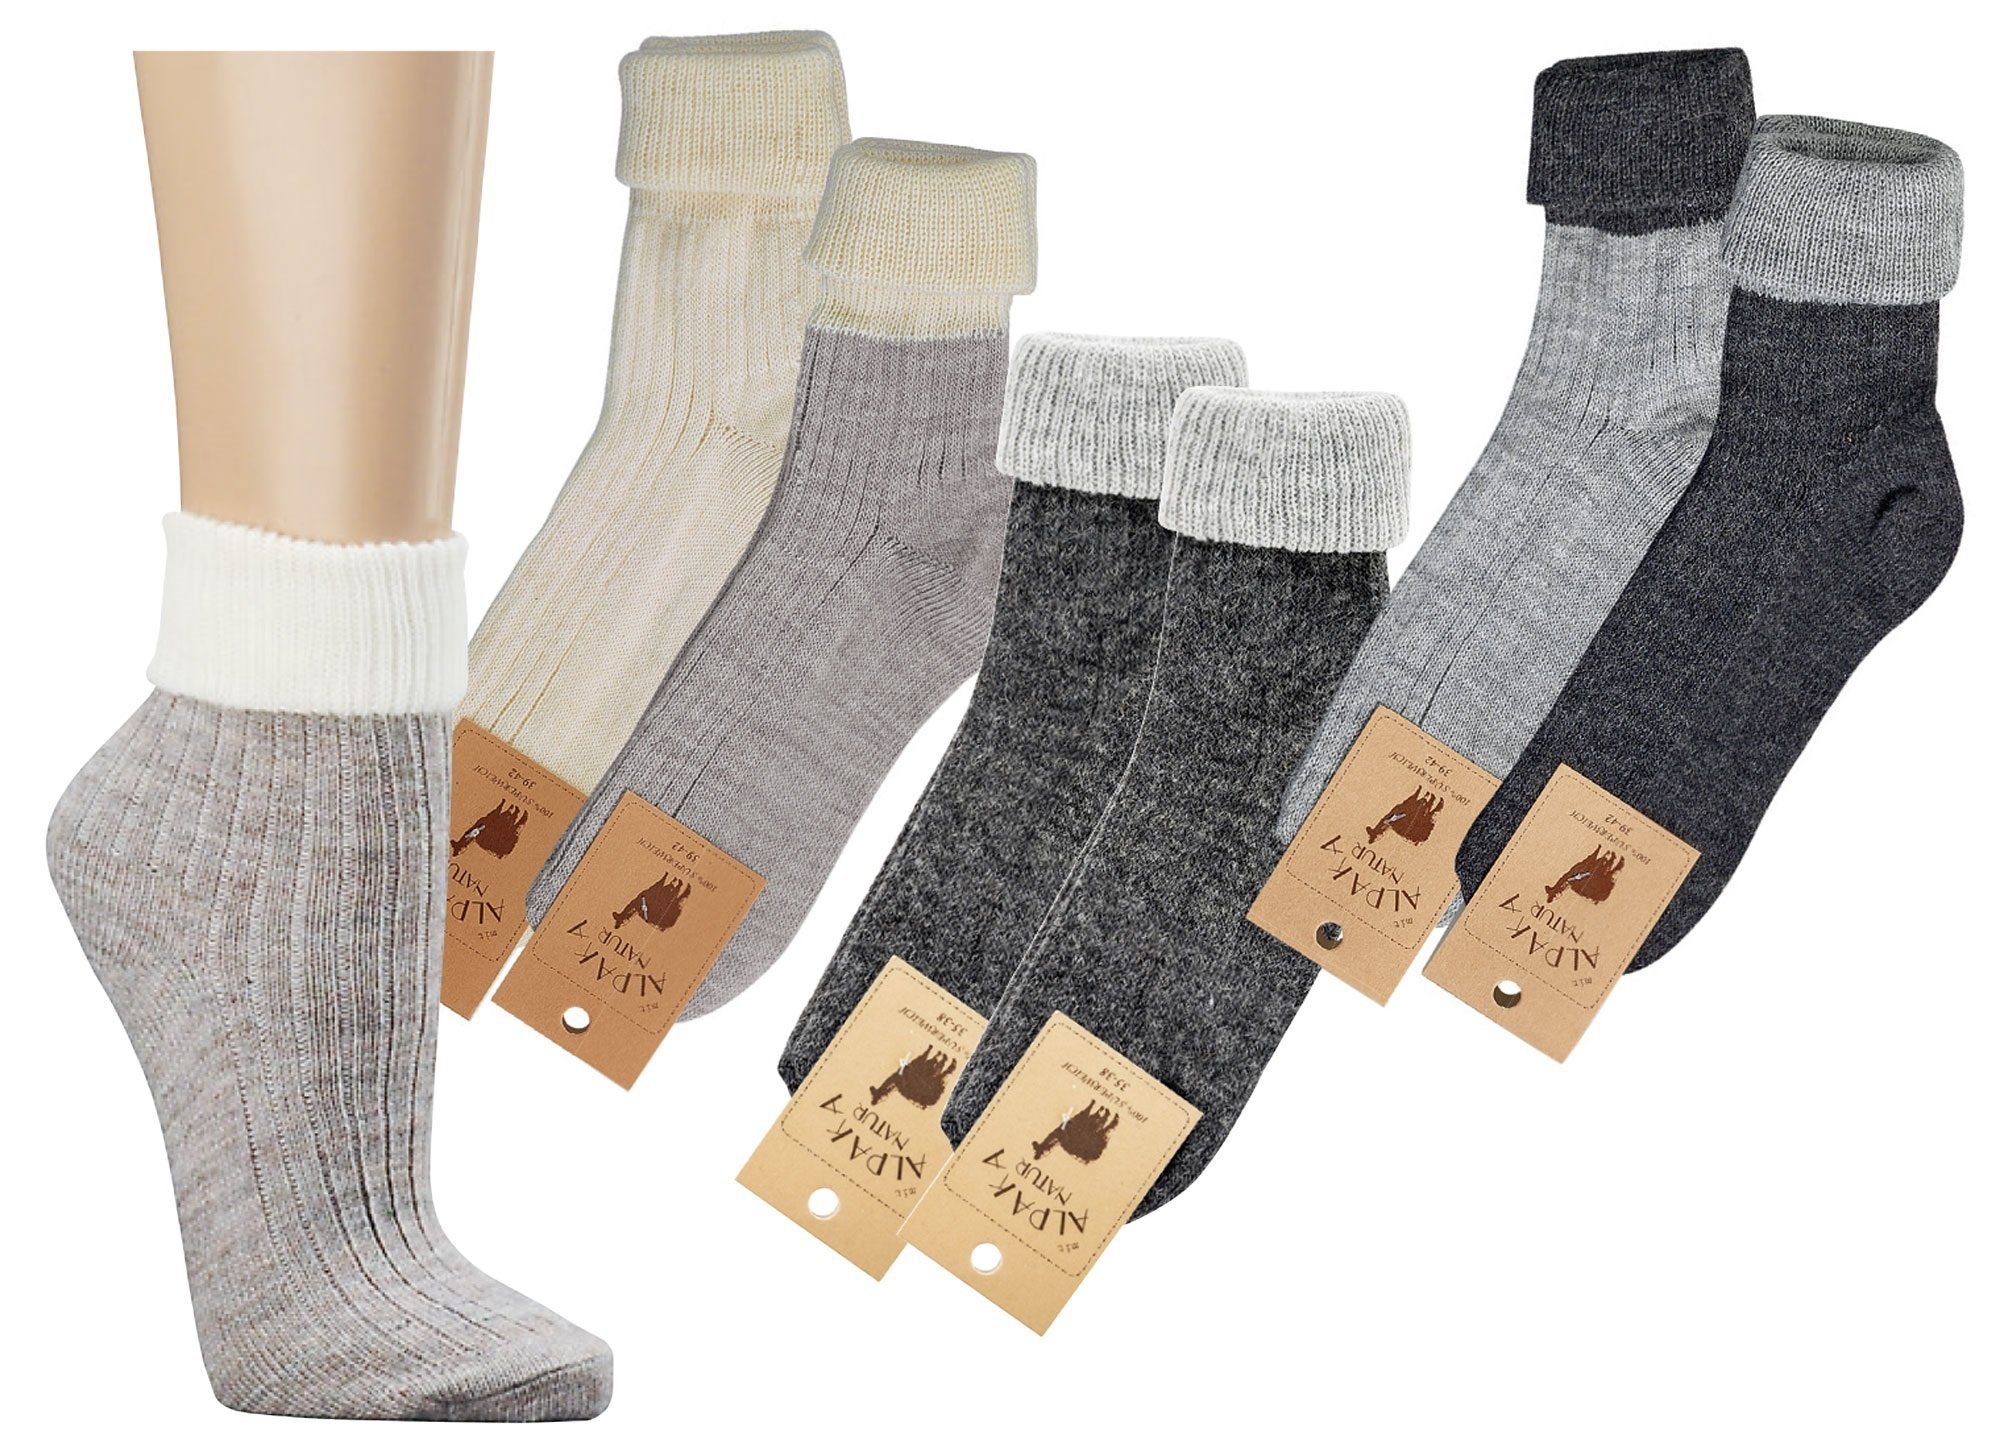 Mein Style Freizeitsocken Alpaka Socken Umschlag unisex dünn (2-Paar, 2 Paar) 2-er Pack anthrazit hell-dunkel